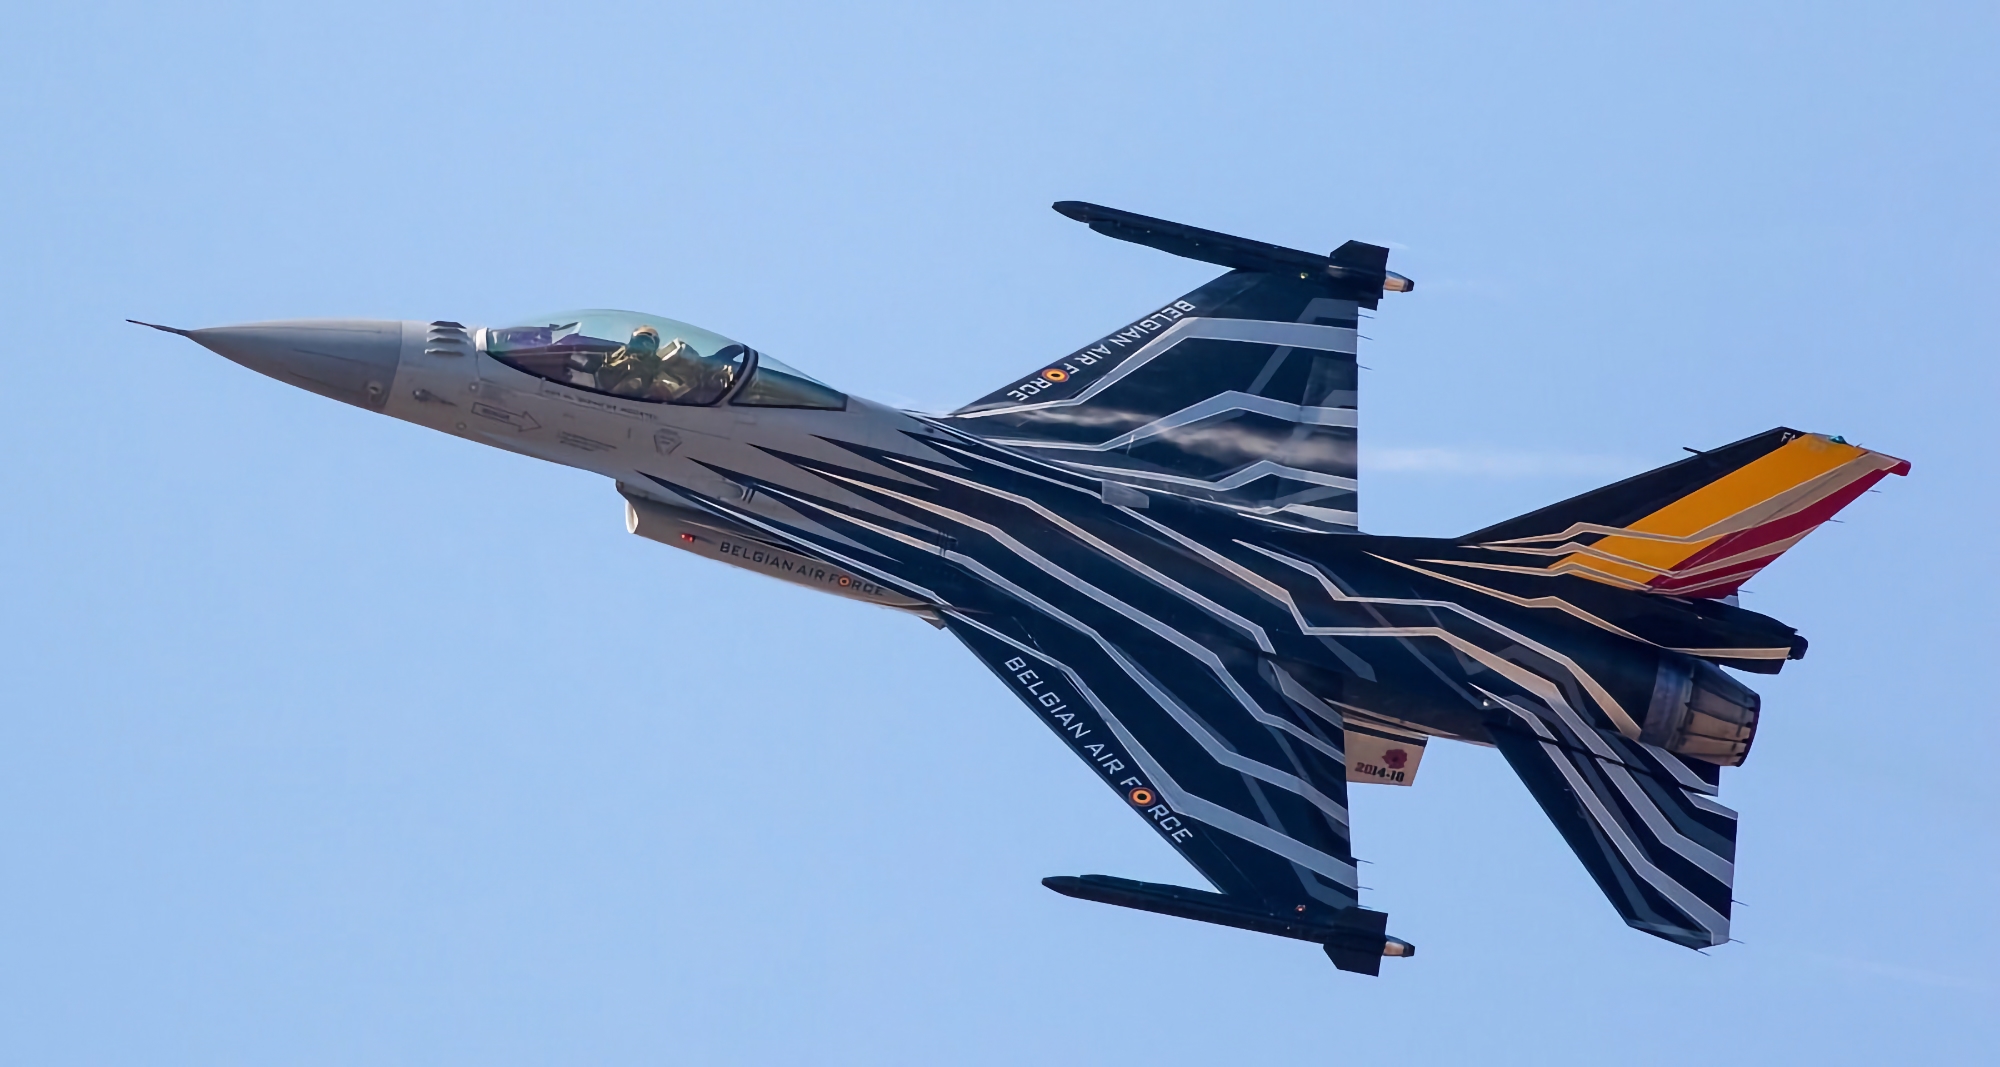 Коли Бельгія планує передати Україні свої винищувачі F-16 Fighting Falcon